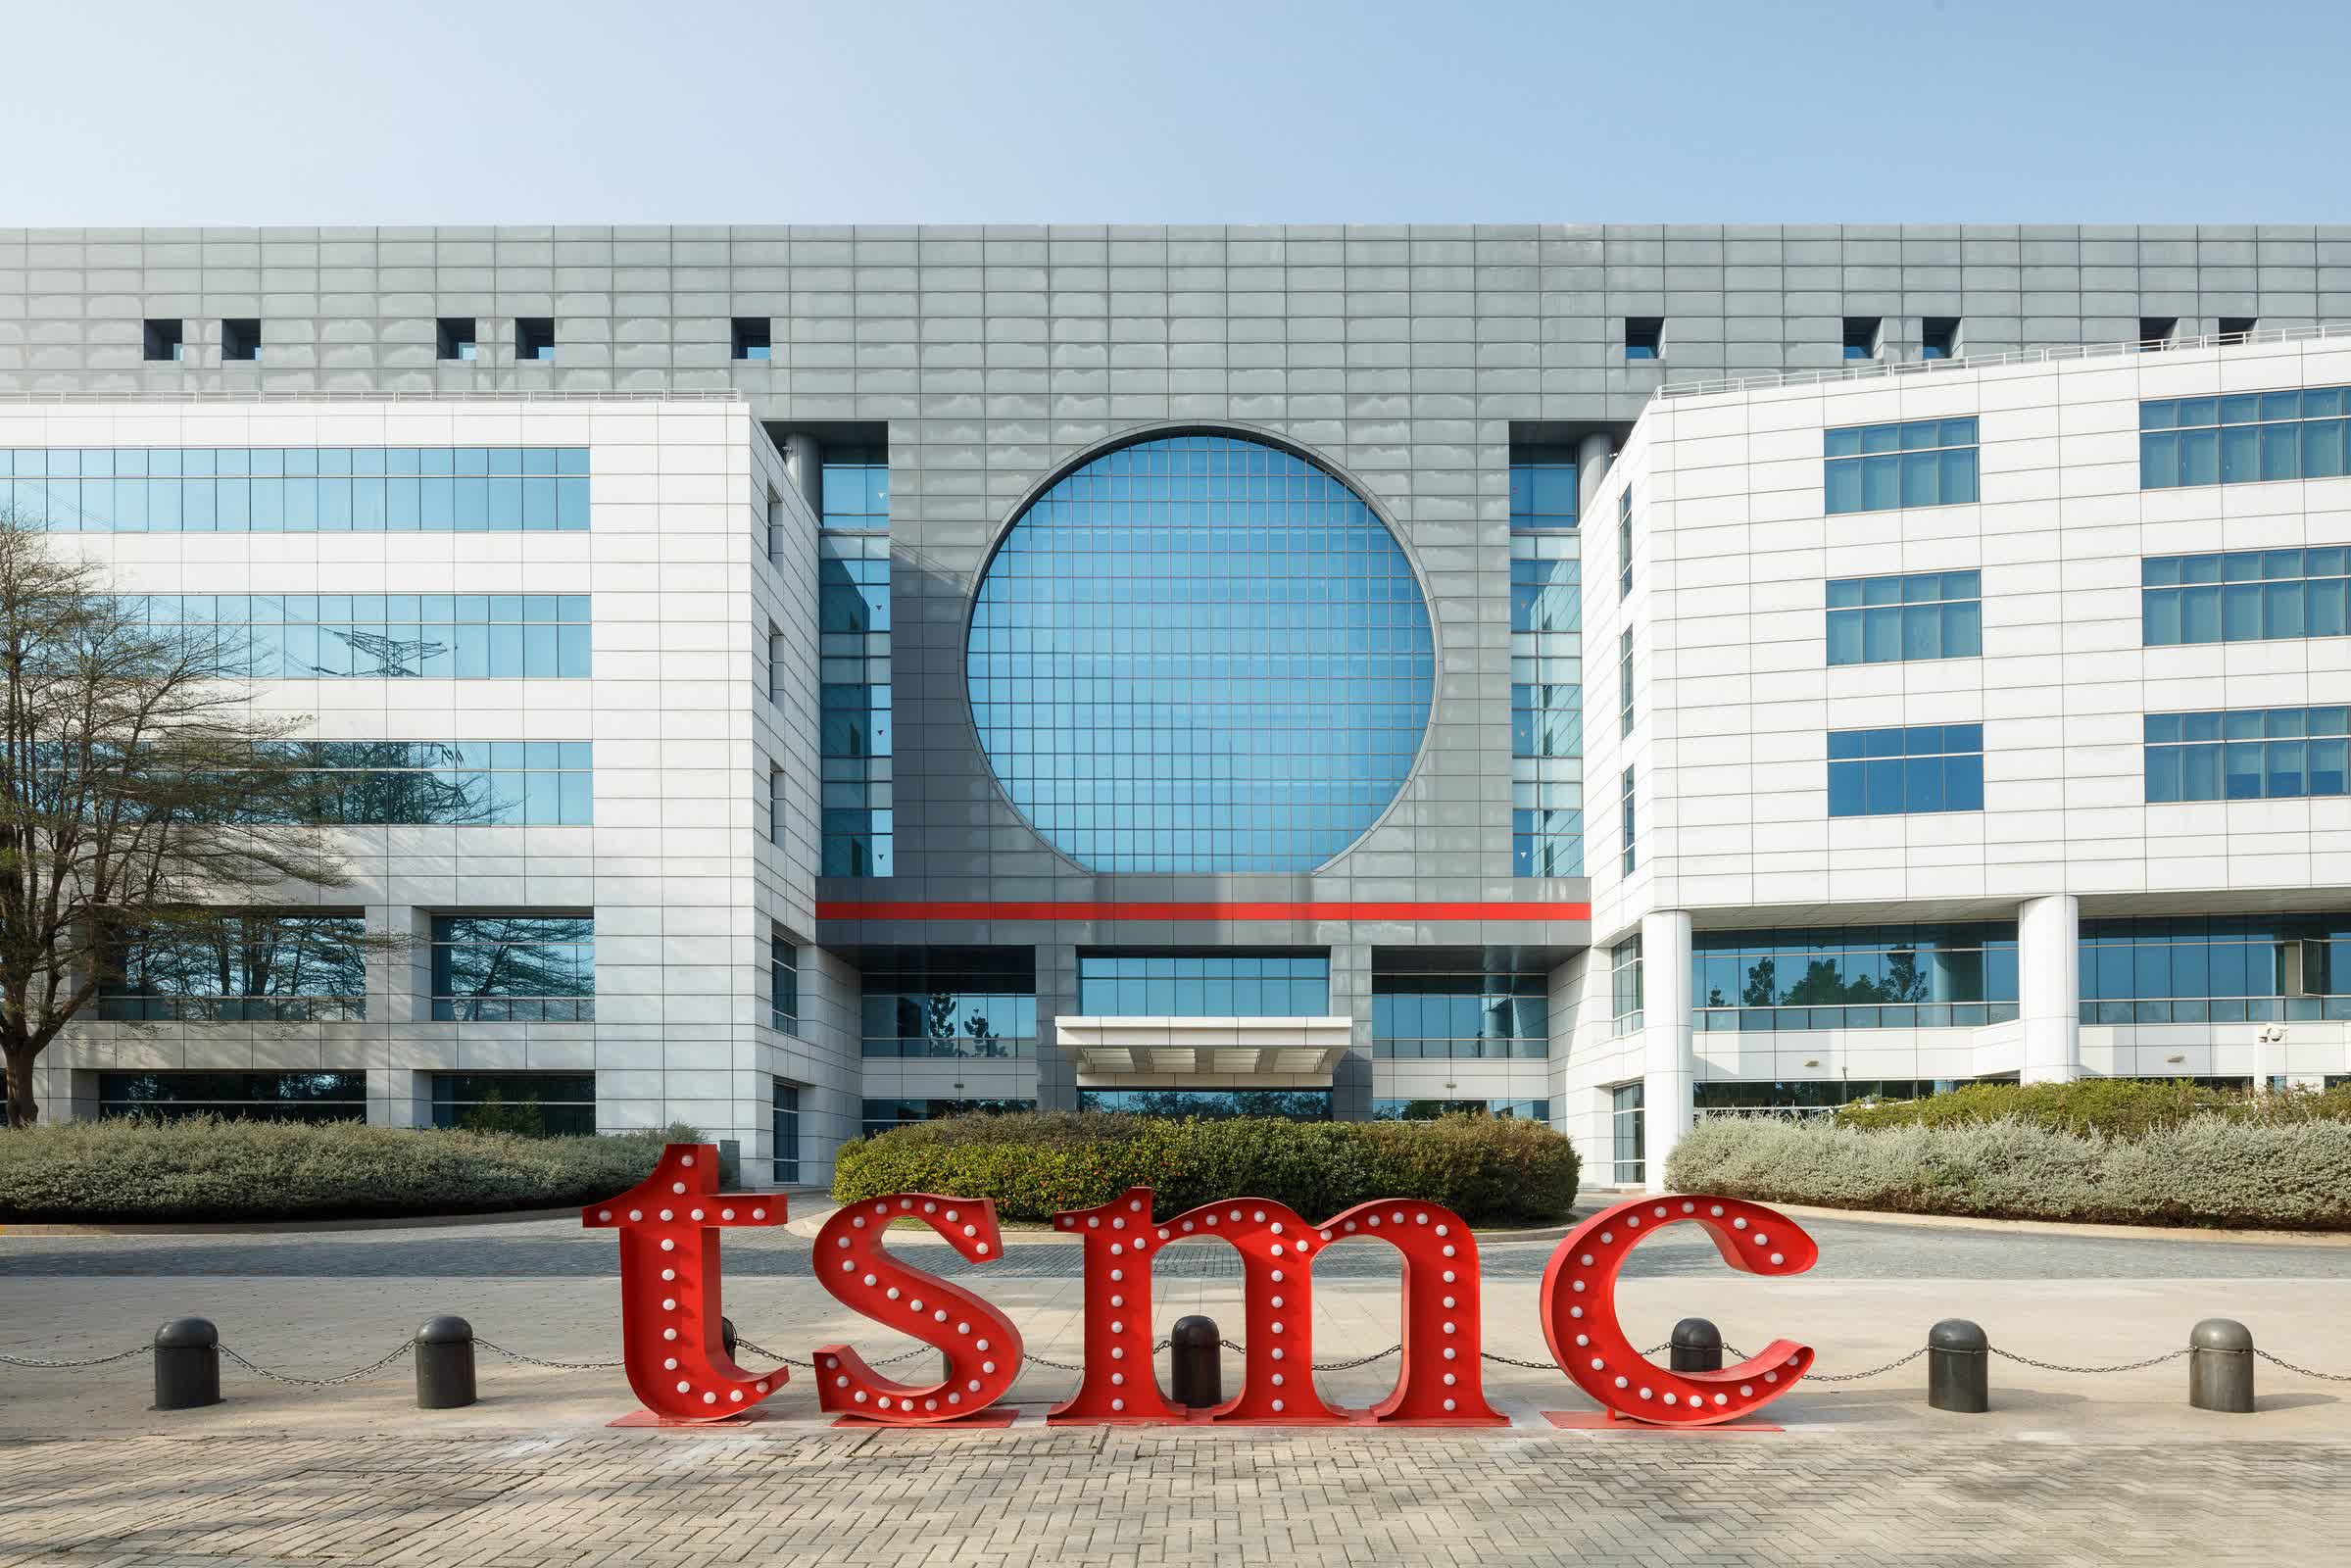 Analista de semiconductores explica qué pasaría si China destruyera las fábricas de TSMC